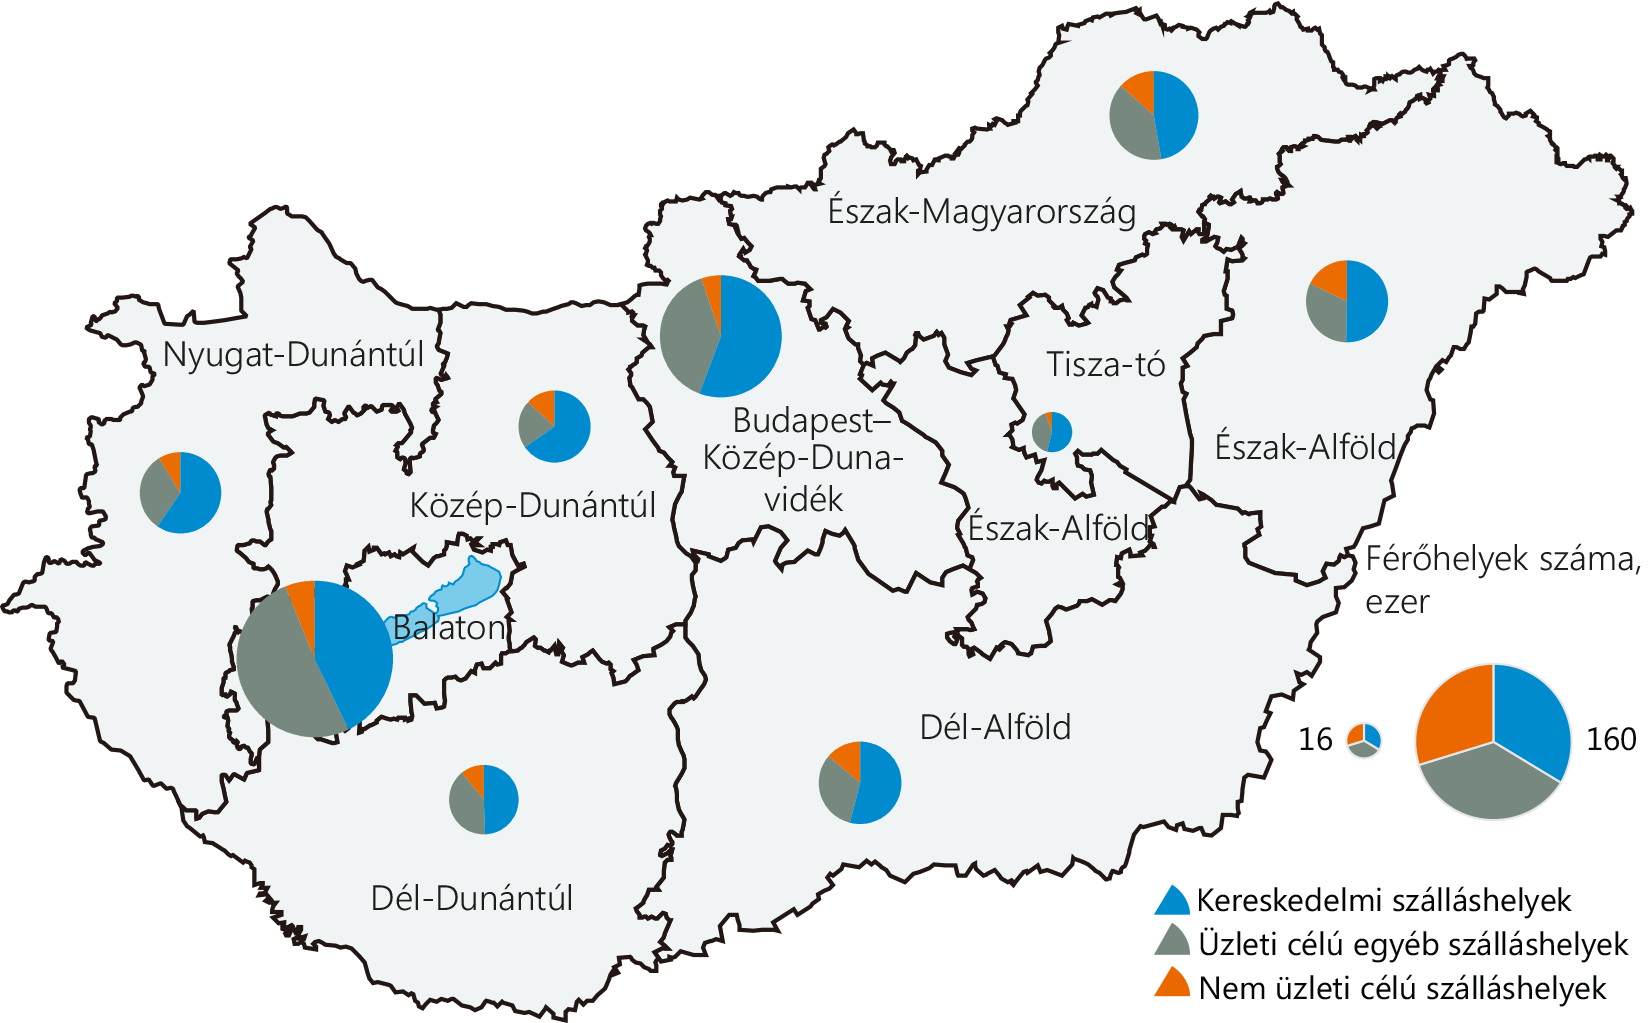 A szálláshelyek férőhelyeinek száma és megoszlása turisztikai régiónként, 2019